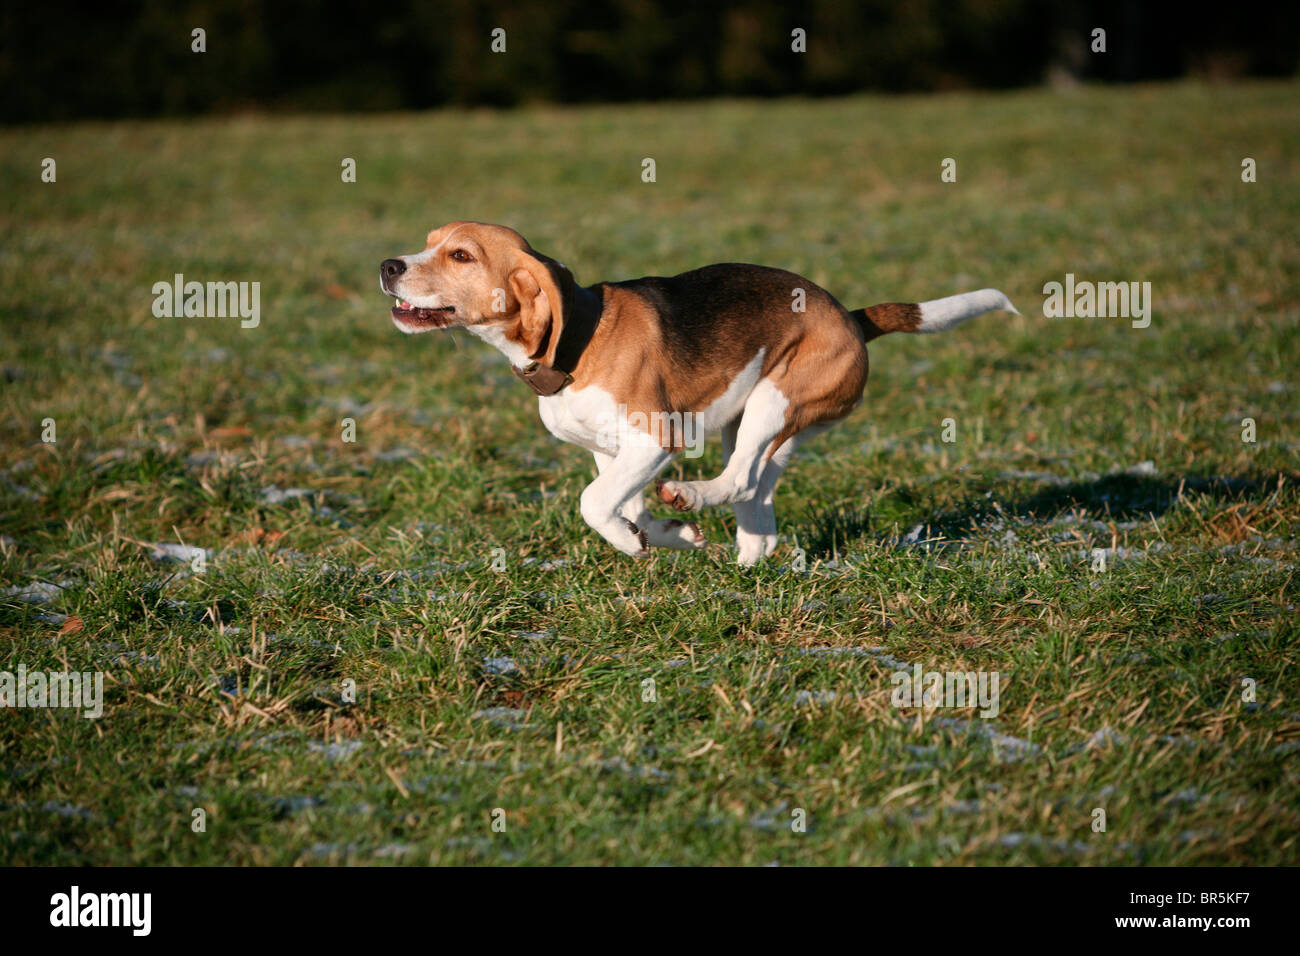 Beagle, hunting dog Stock Photo